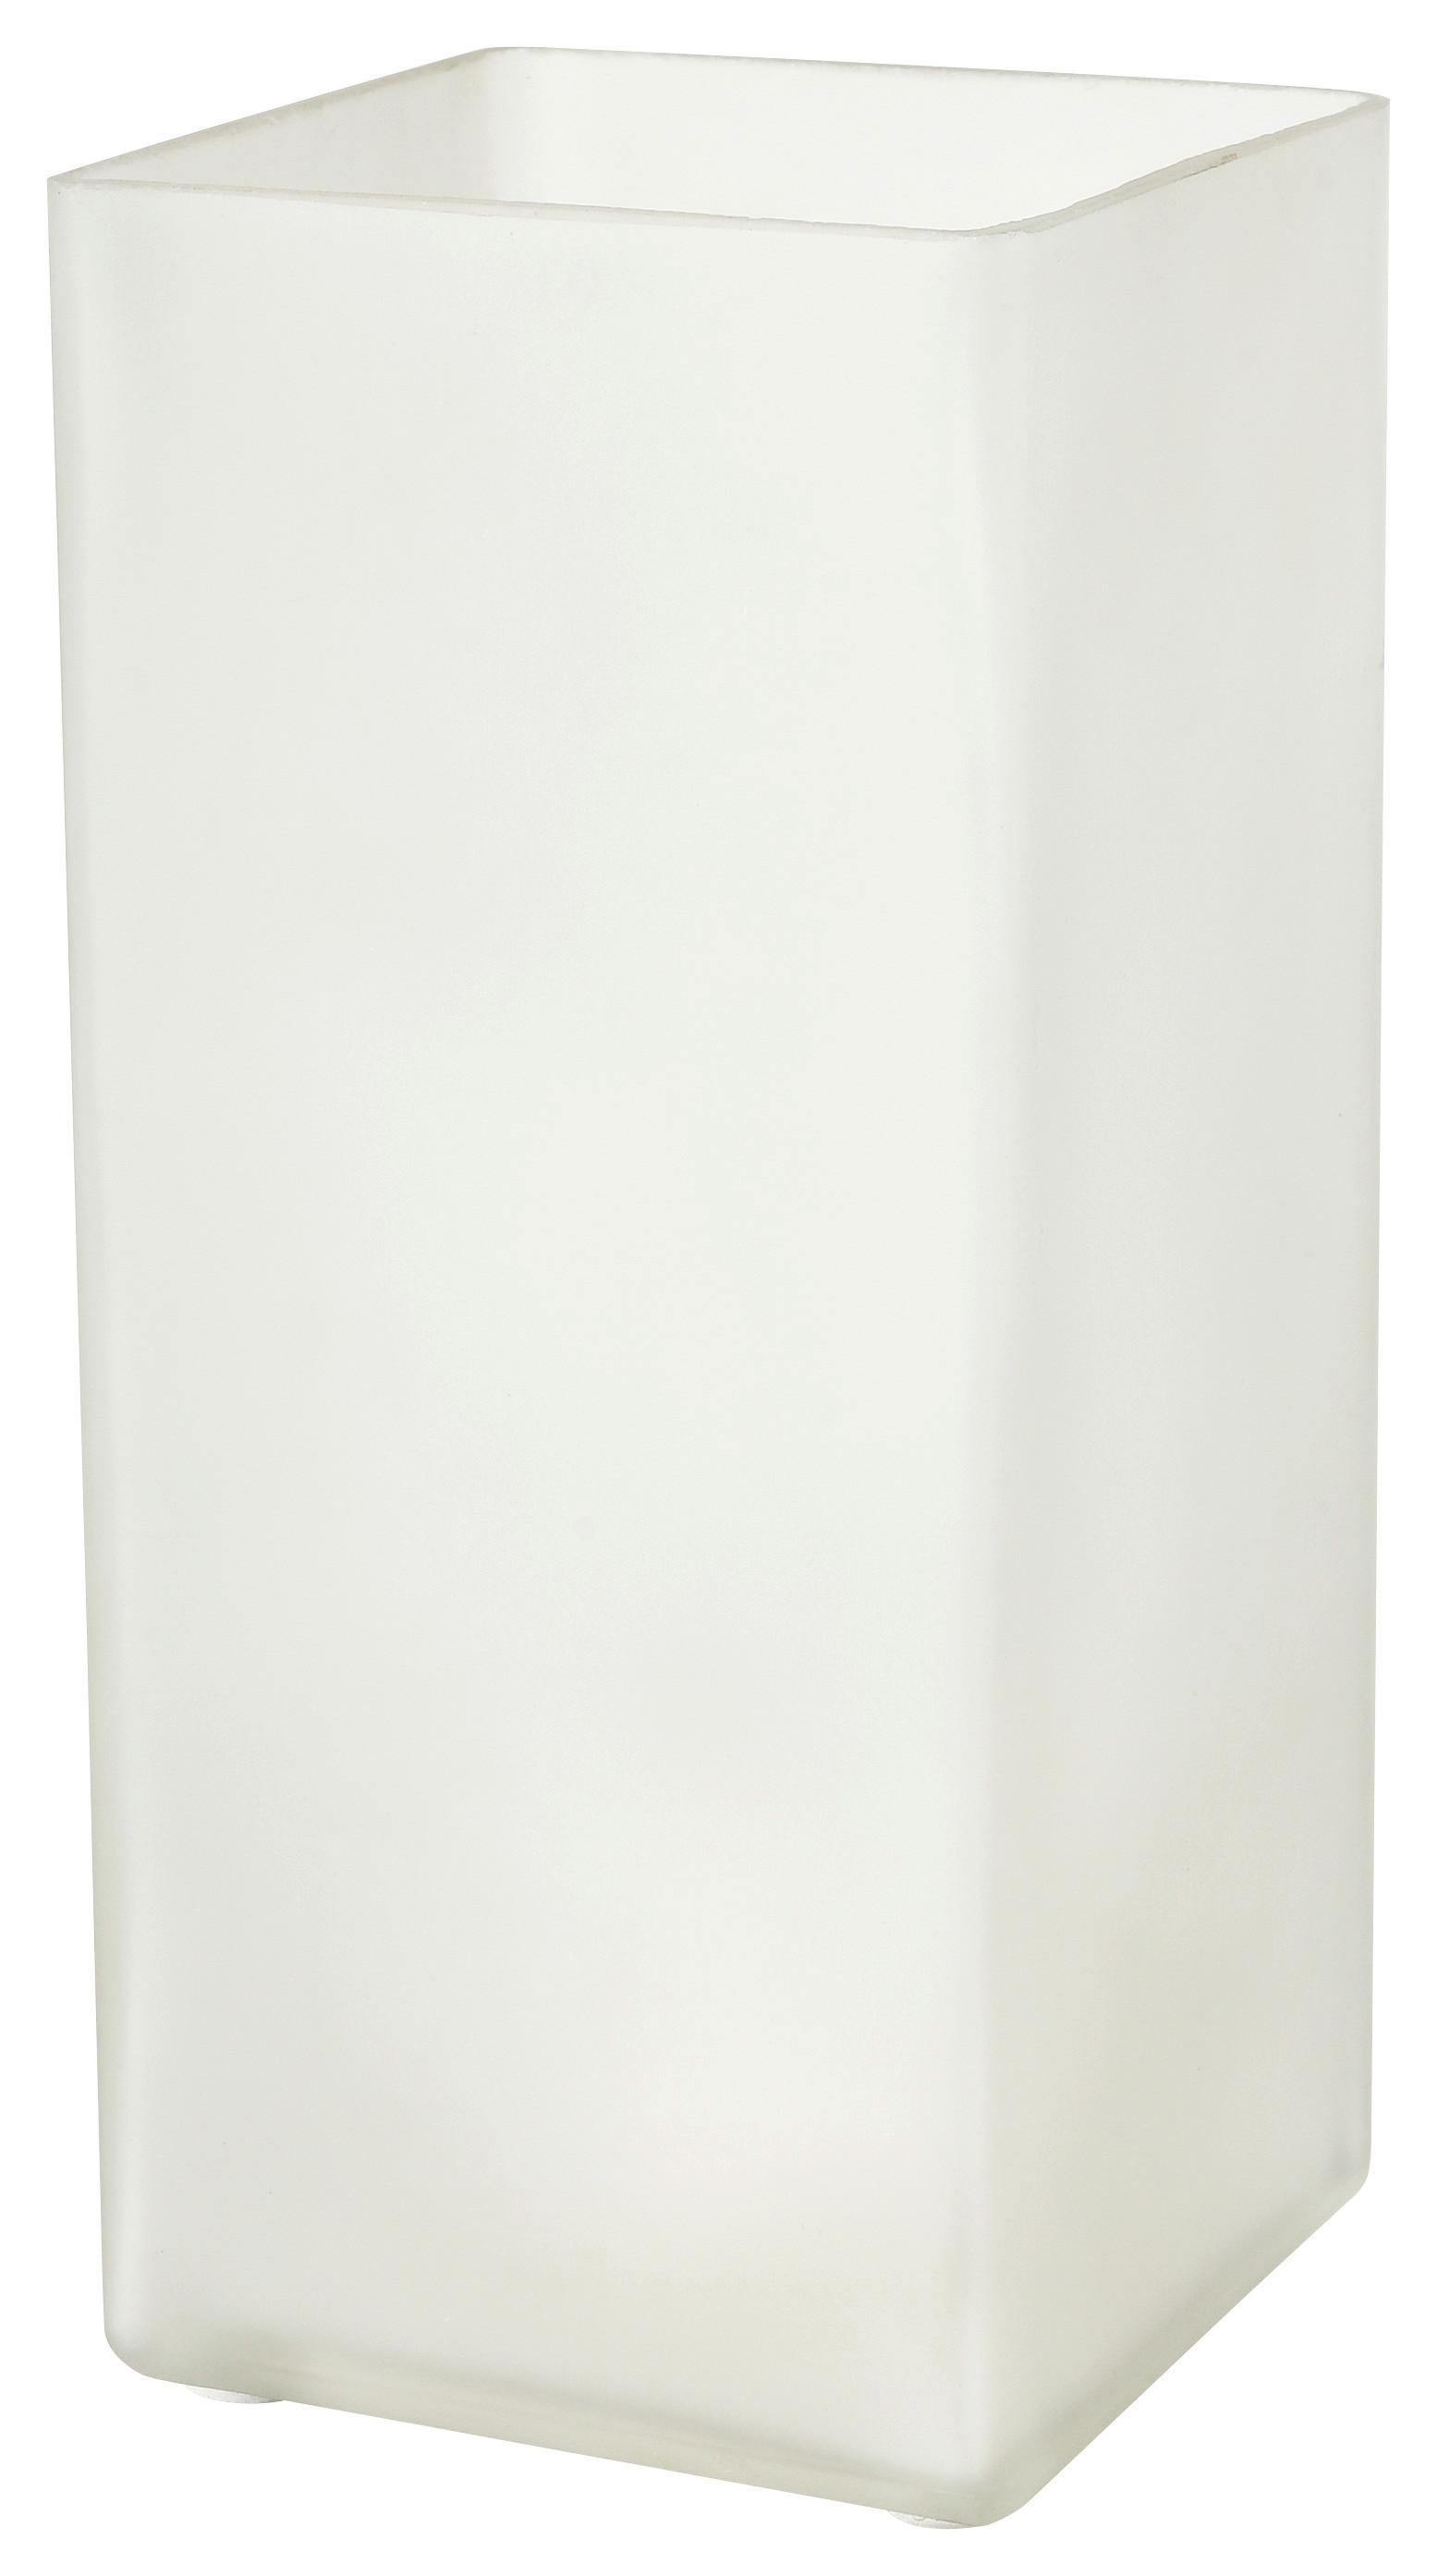 Namizna Svetilka Beni -Based-, 40 W - bela, Konvencionalno, steklo (10/22/10cm) - Based